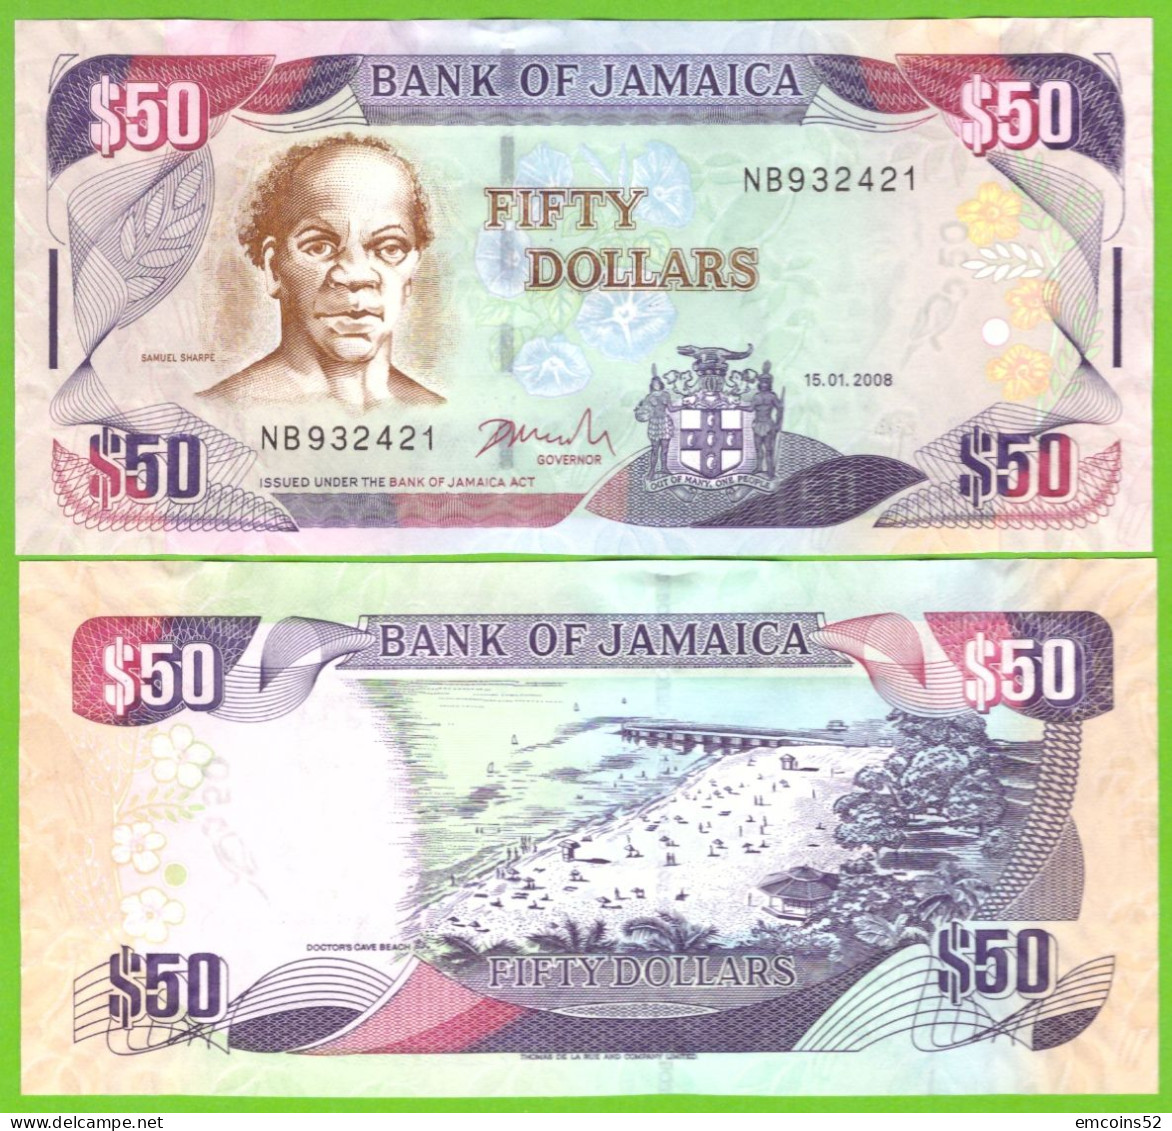 JAMAICA 50 DOLLARS 2008 P-83c  UNC - Jamaica